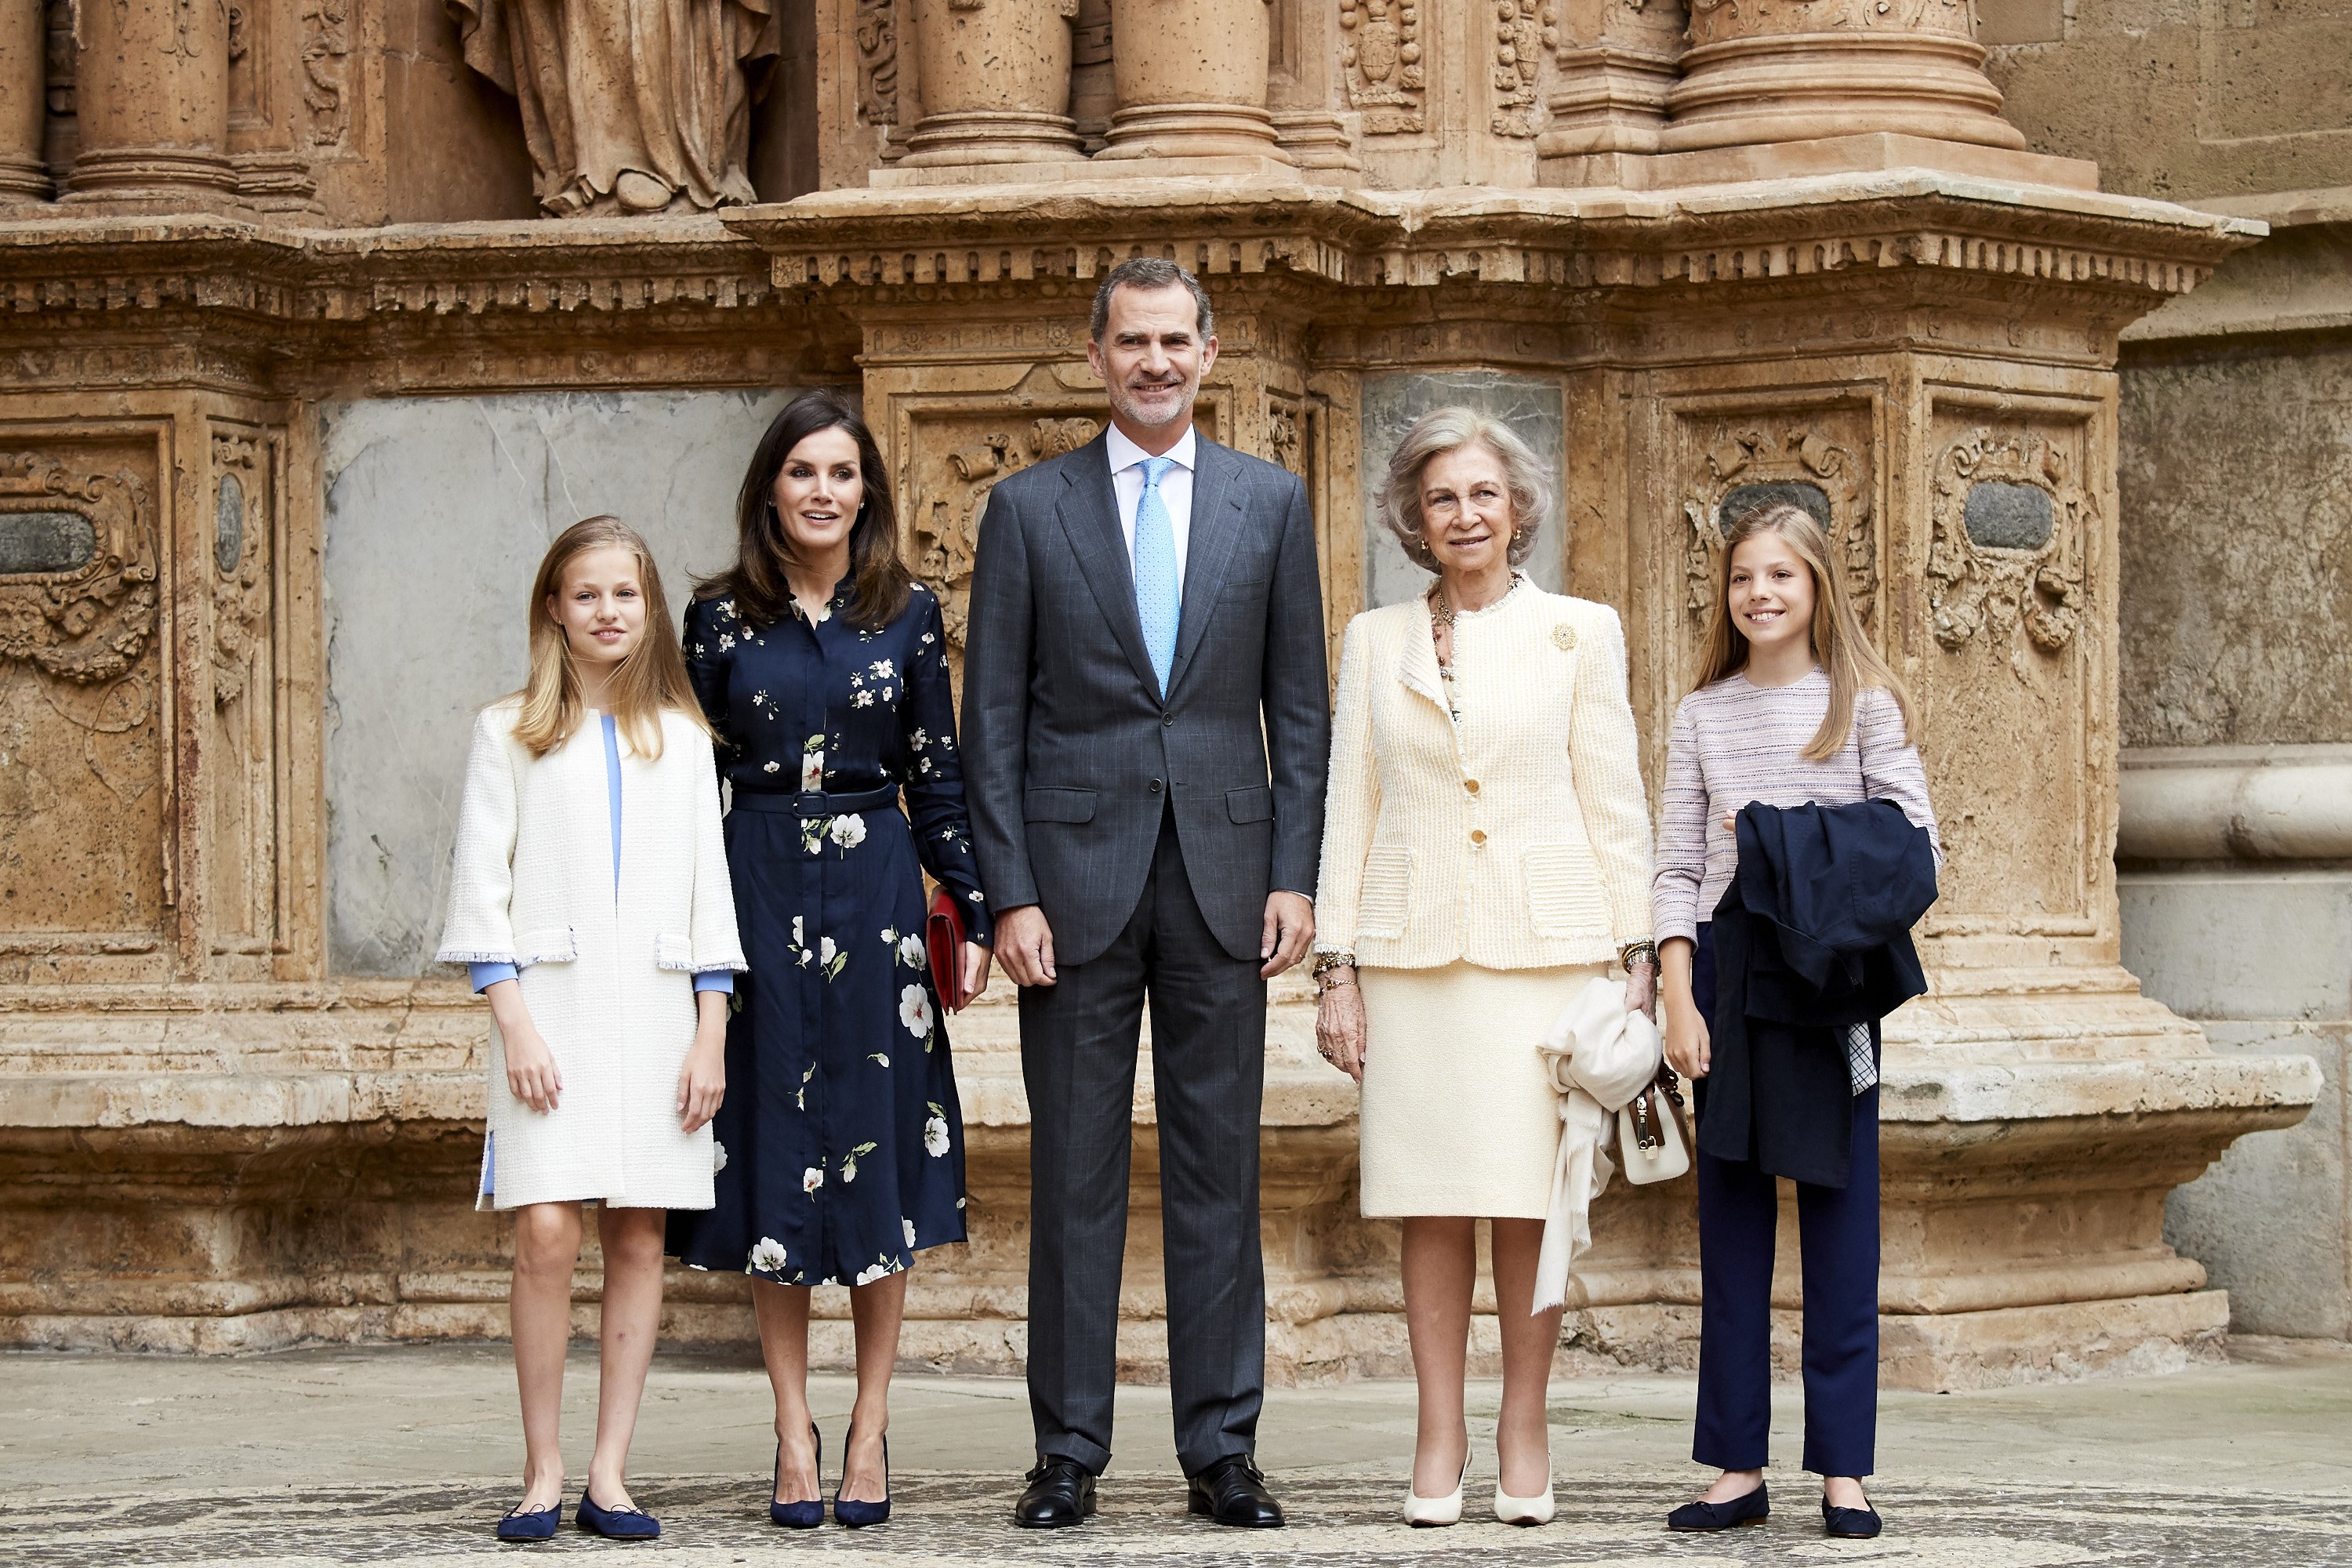 Le roi Philippe VI d'Espagne, et sa famille dans la cathédrale de Palma de Majorque | Photo : Getty Images